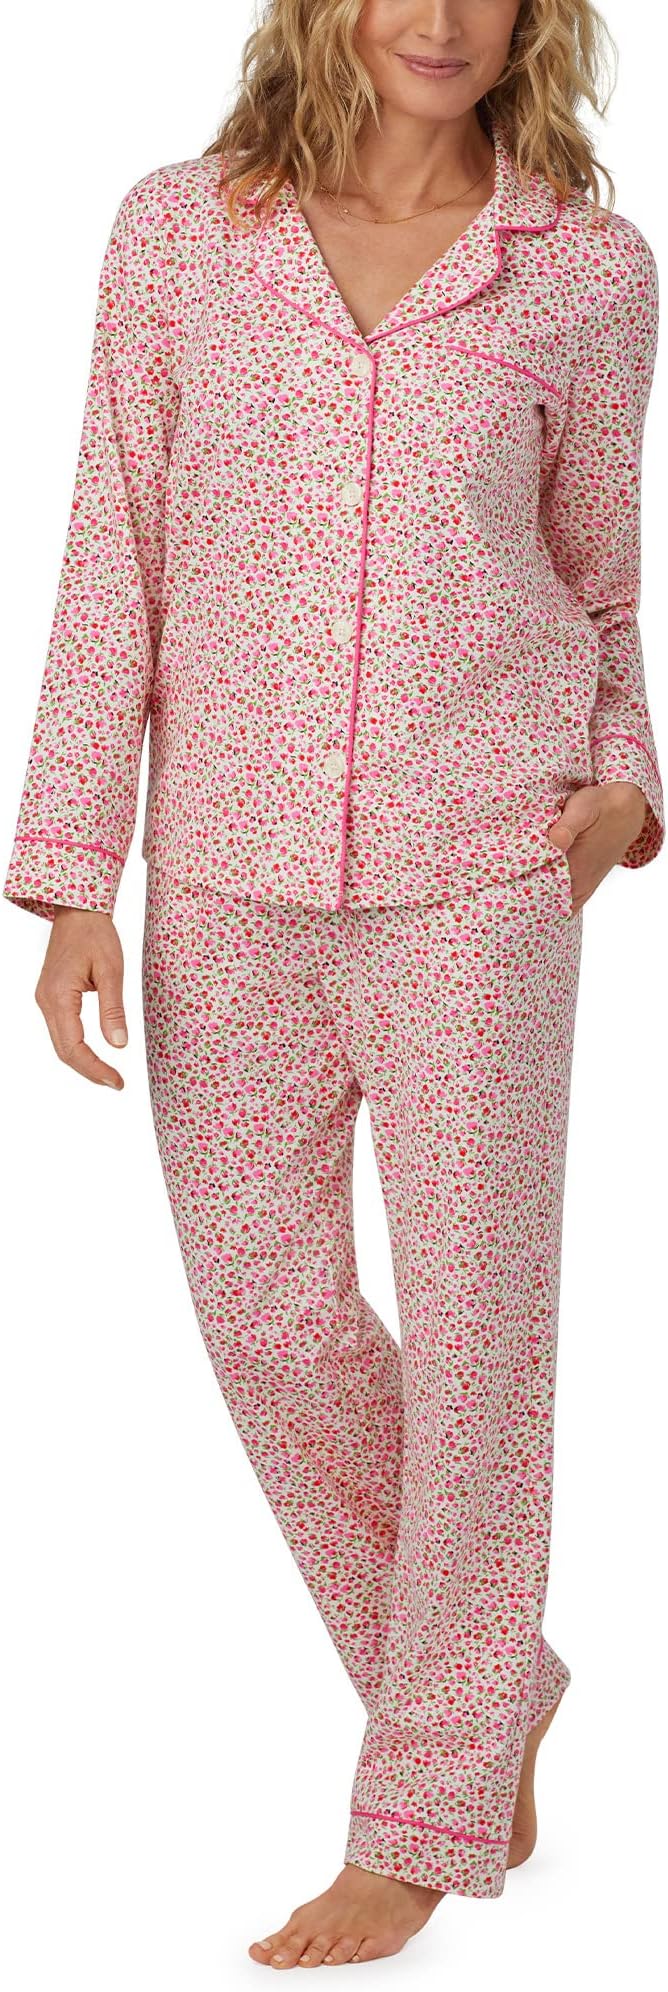 greg lynn form Классический пижамный комплект с длинными рукавами Bedhead PJs, цвет Lynn